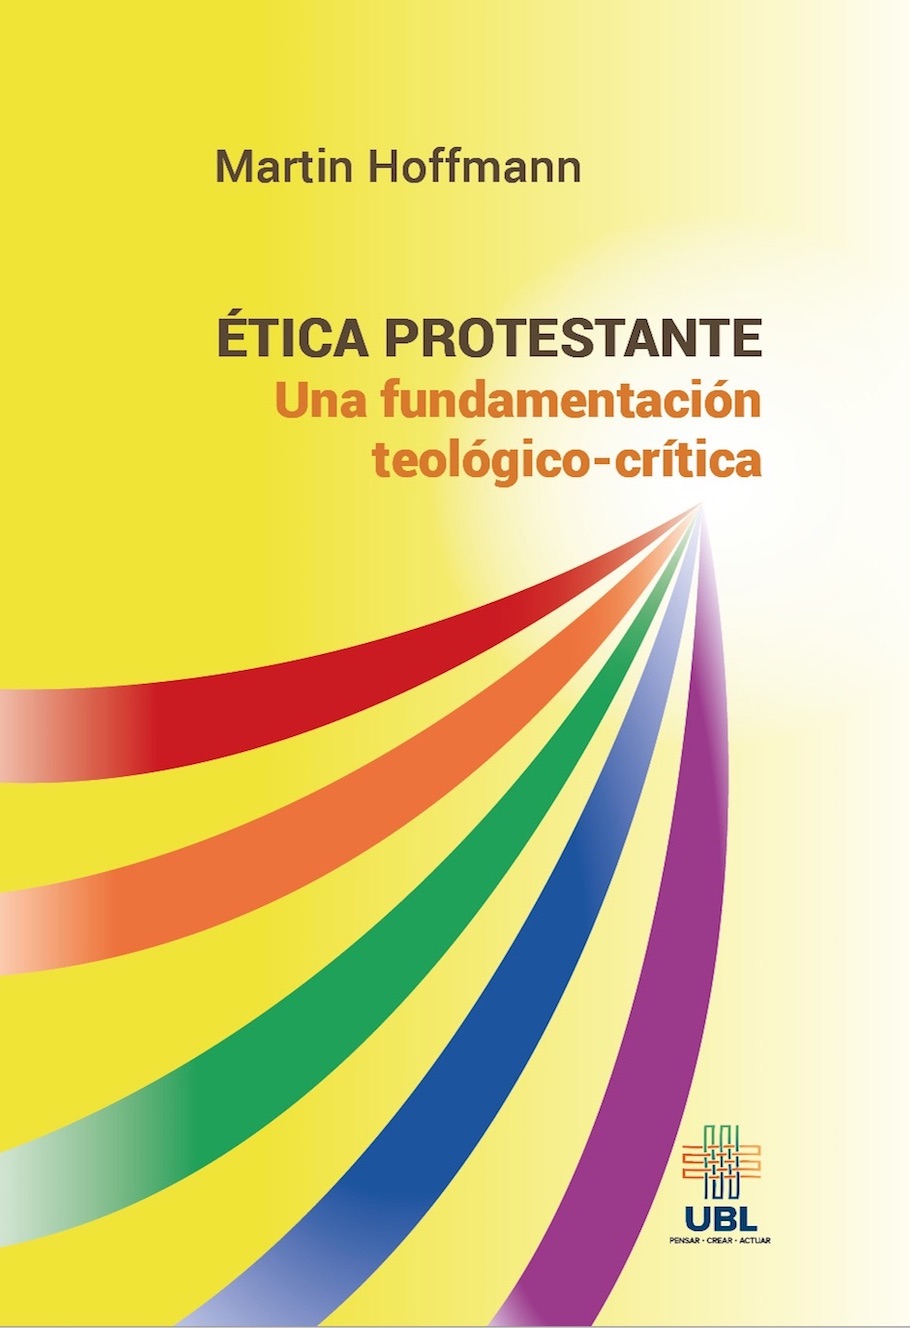 Ética protestante: Una fundamentación teológico-crítica